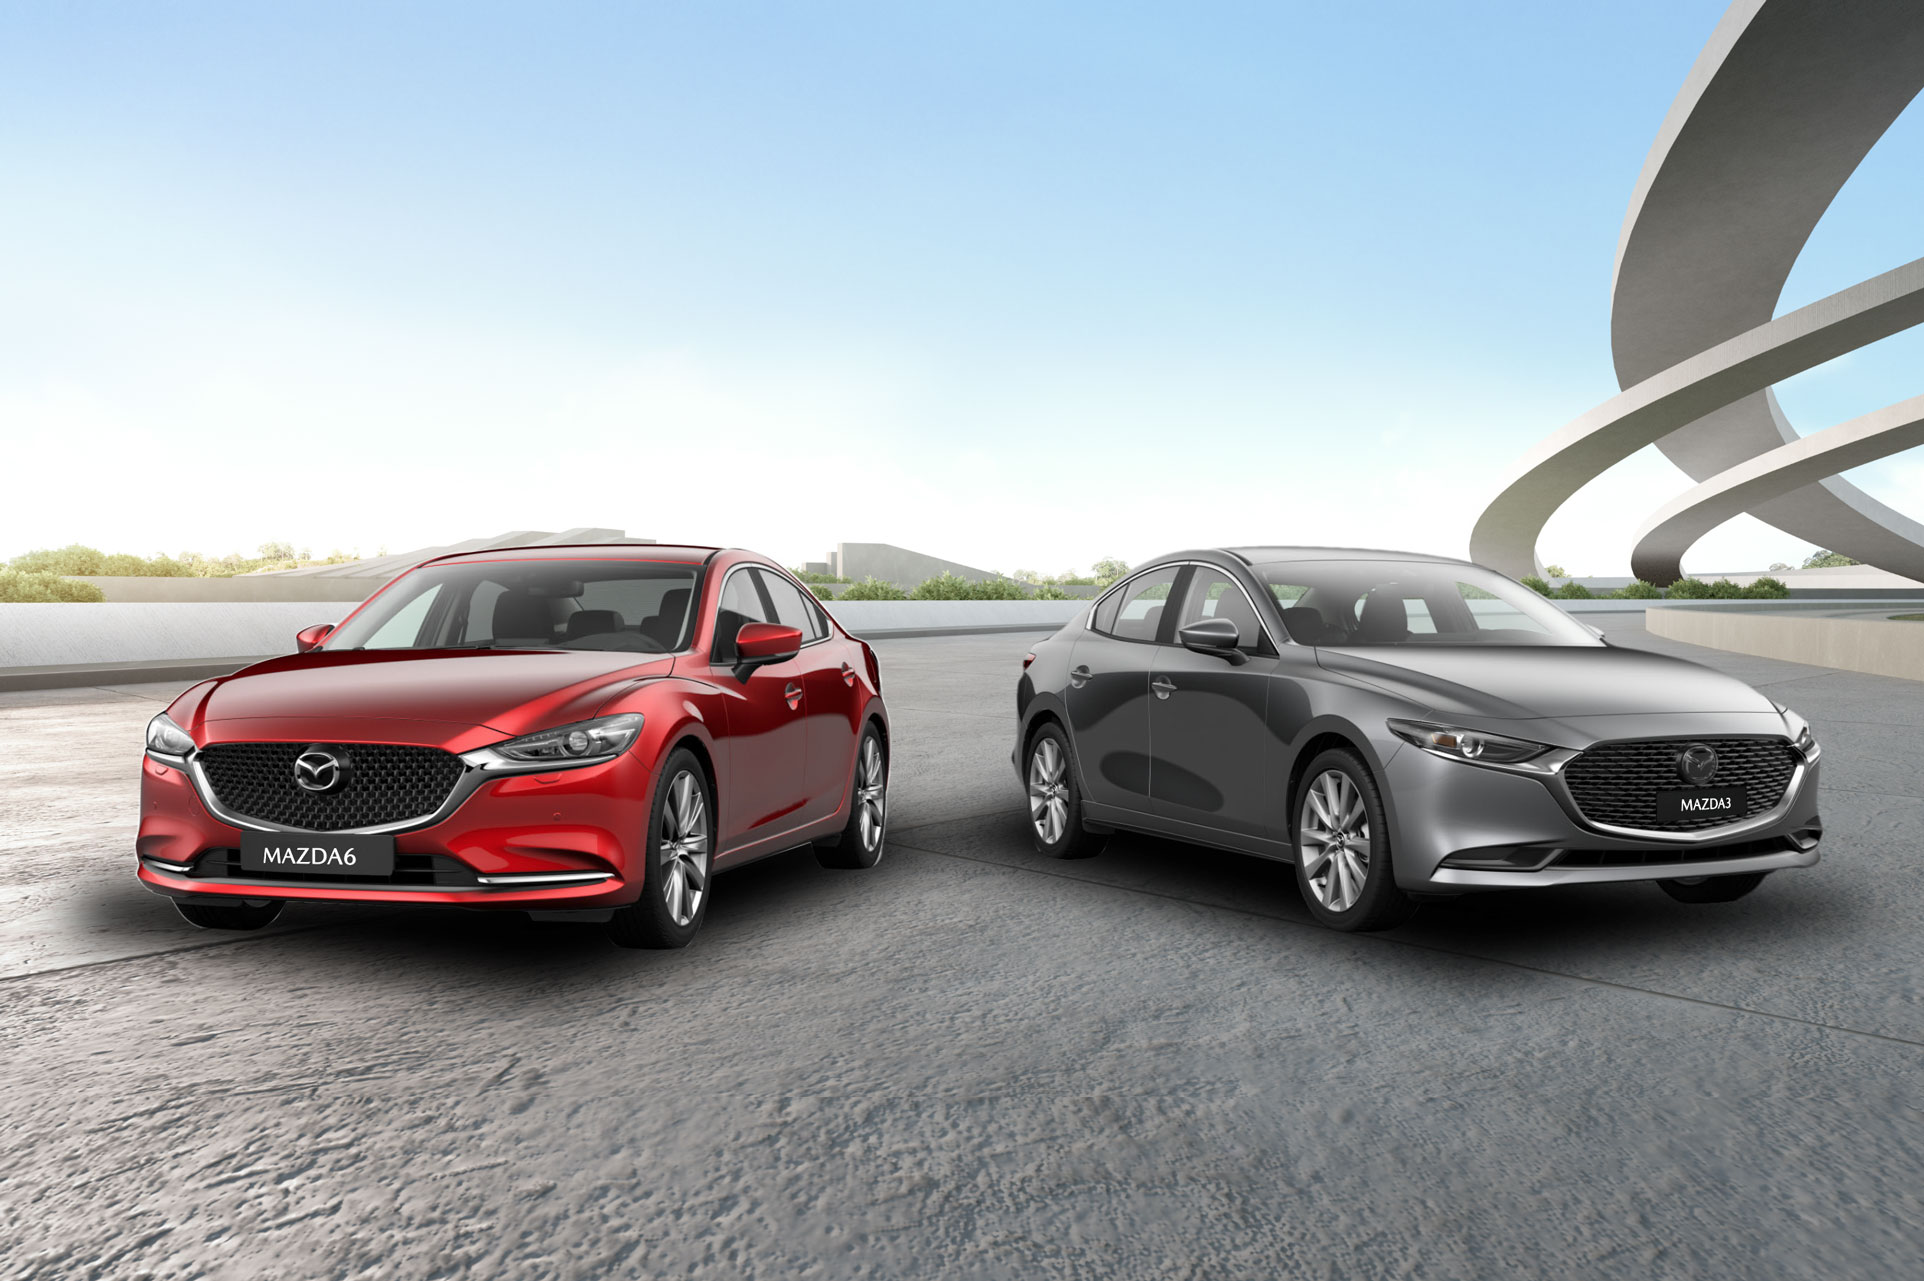 Mazda trưng hai mẫu sedan bí ẩn dễ là Mazda3 và Mazda6 thế hệ mới, hết hy vọng cầu sau và động cơ 6 xy-lanh như BMW - Ảnh 3.